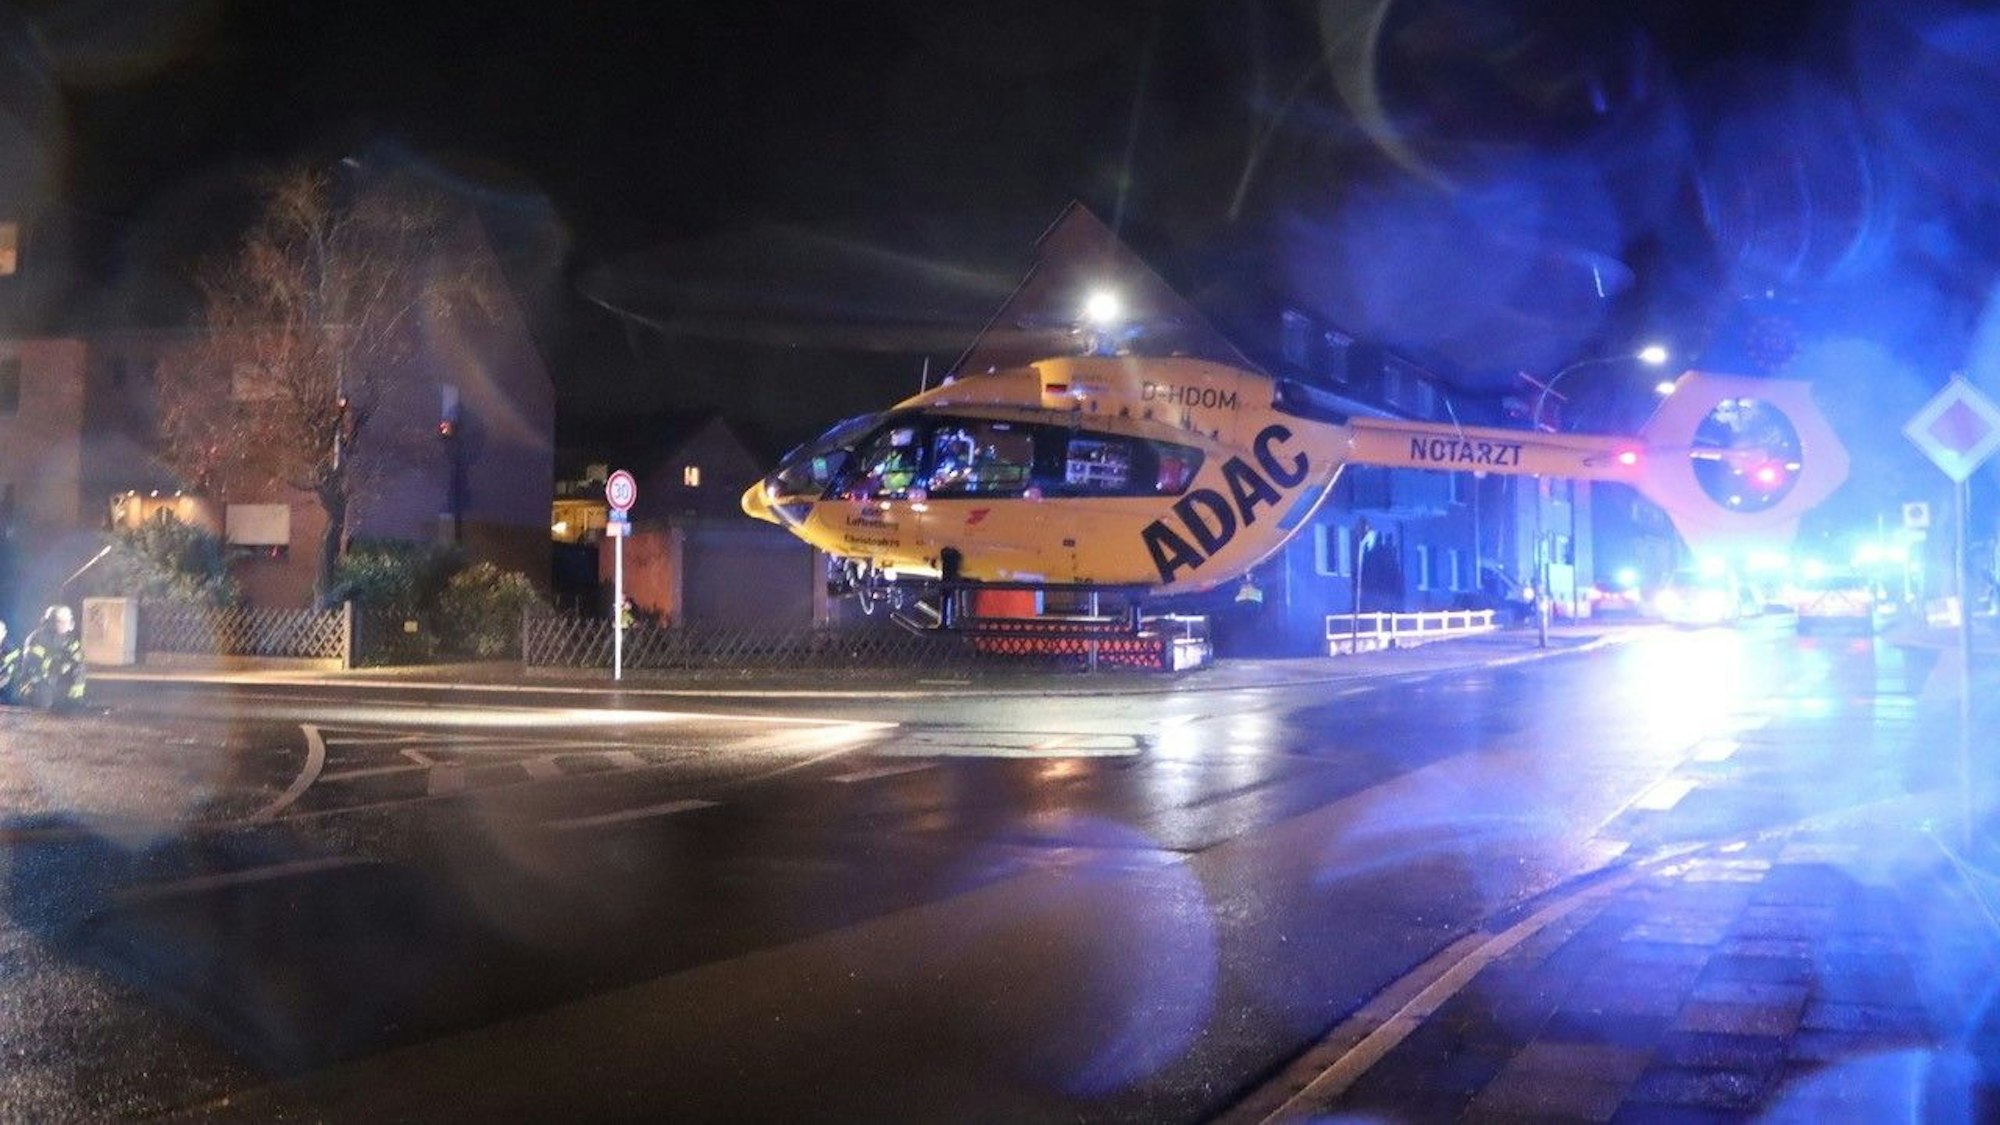 Ein Helikopter landet auf einer Straße in Hürth, im Hintergrund ist Blaulicht zu sehen.